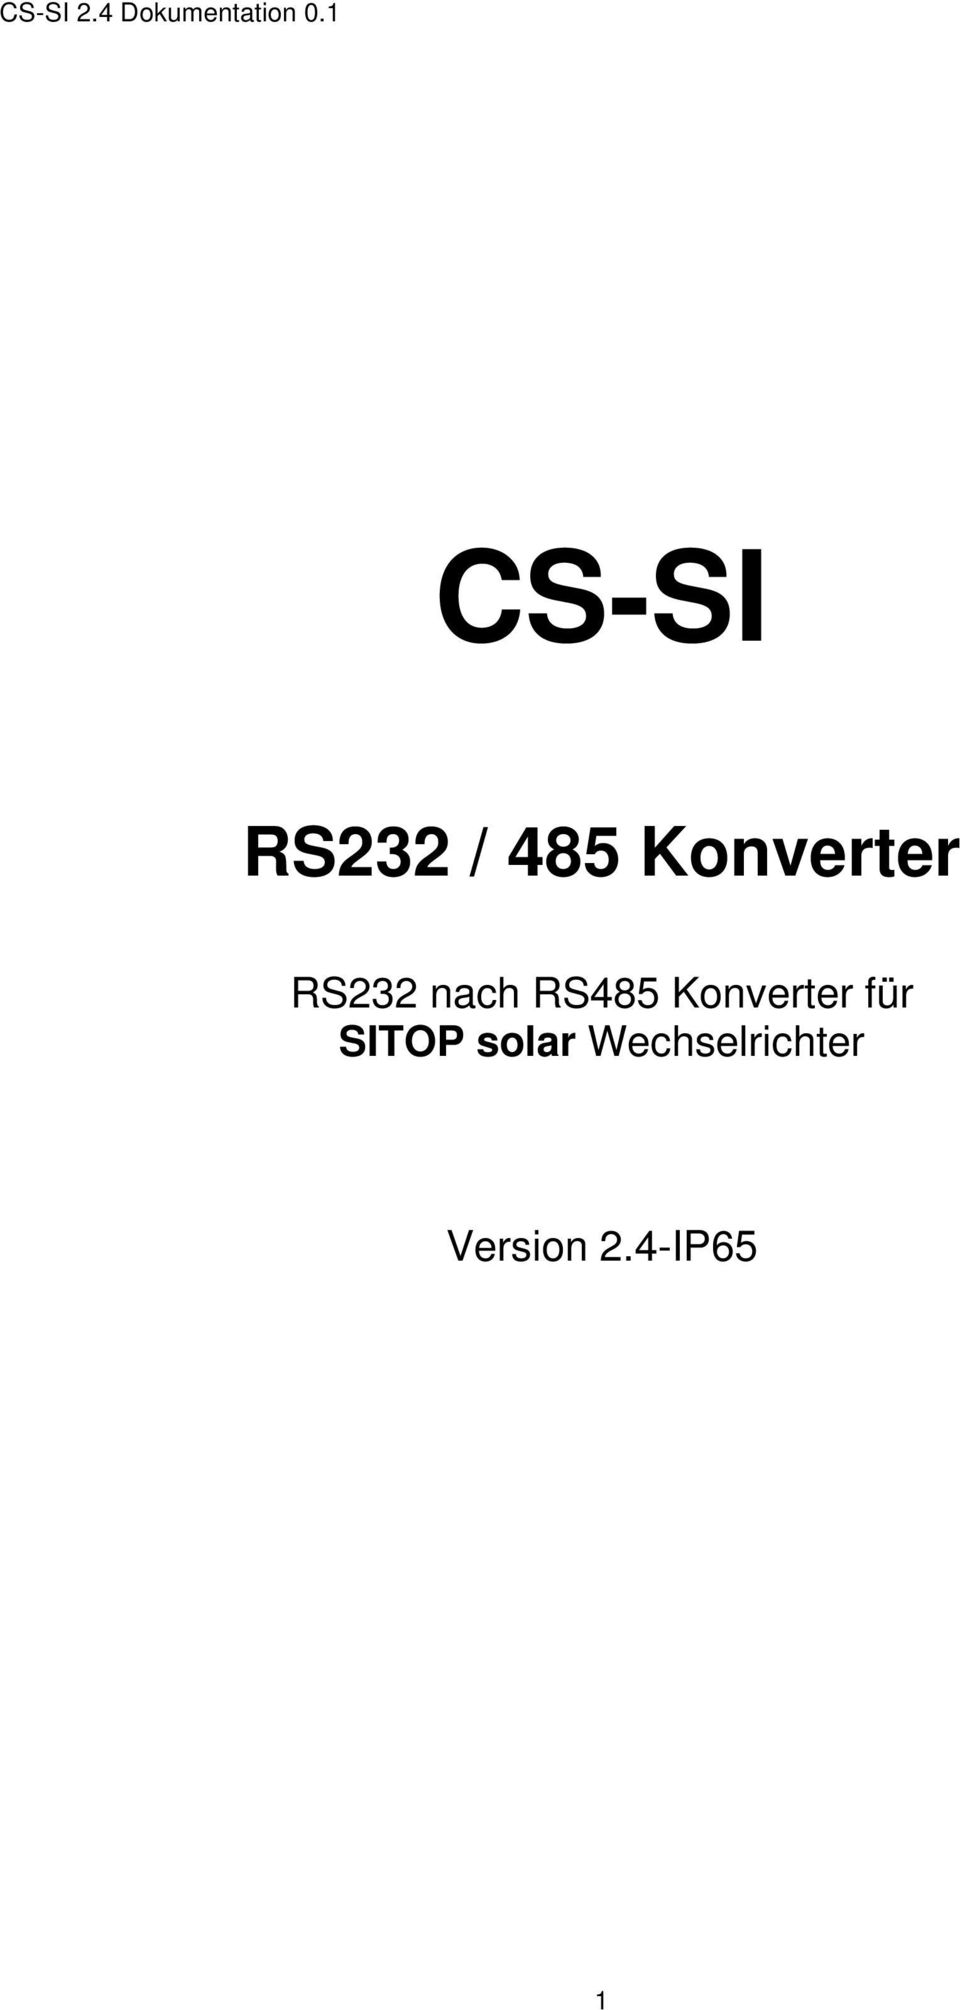 RS485 Konverter für SITOP